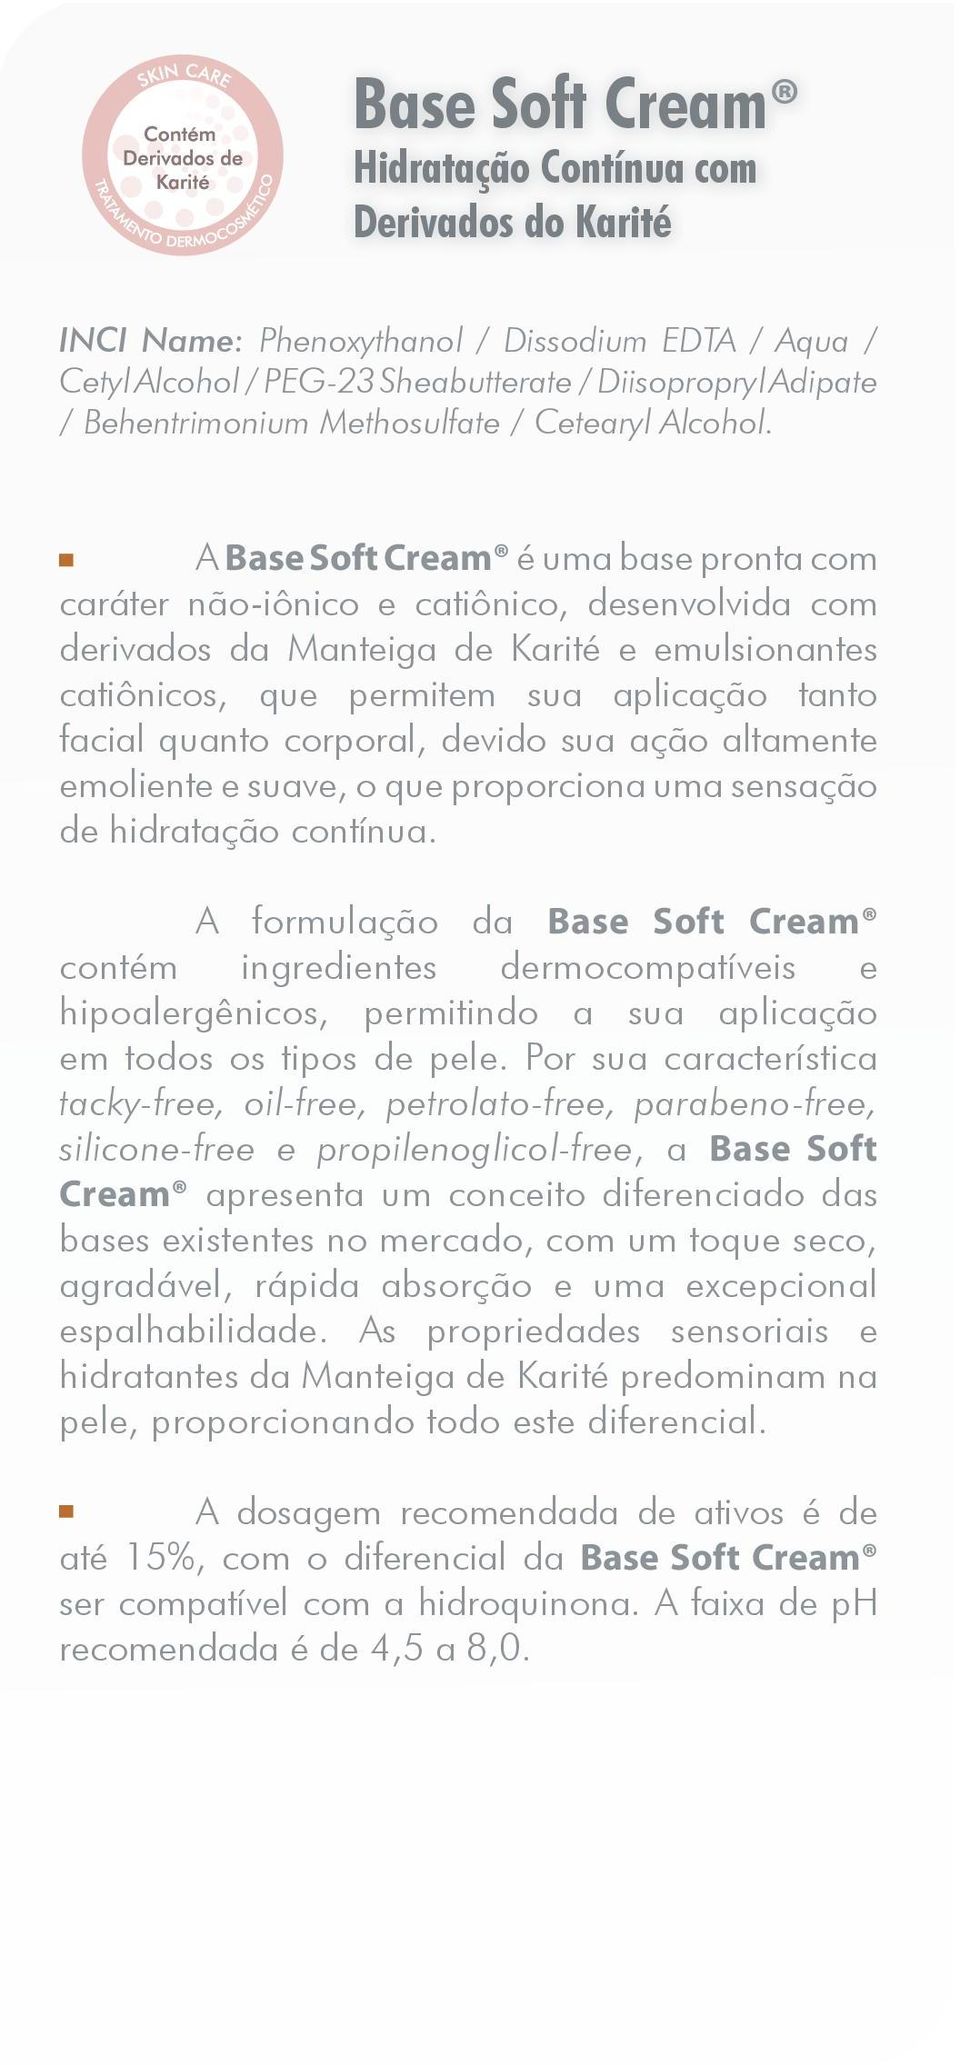 A Base Soft Cream é uma base pronta com caráter não-iônico e catiônico, desenvolvida com derivados da Manteiga de Karité e emulsionantes catiônicos, que permitem sua aplicação tanto facial quanto